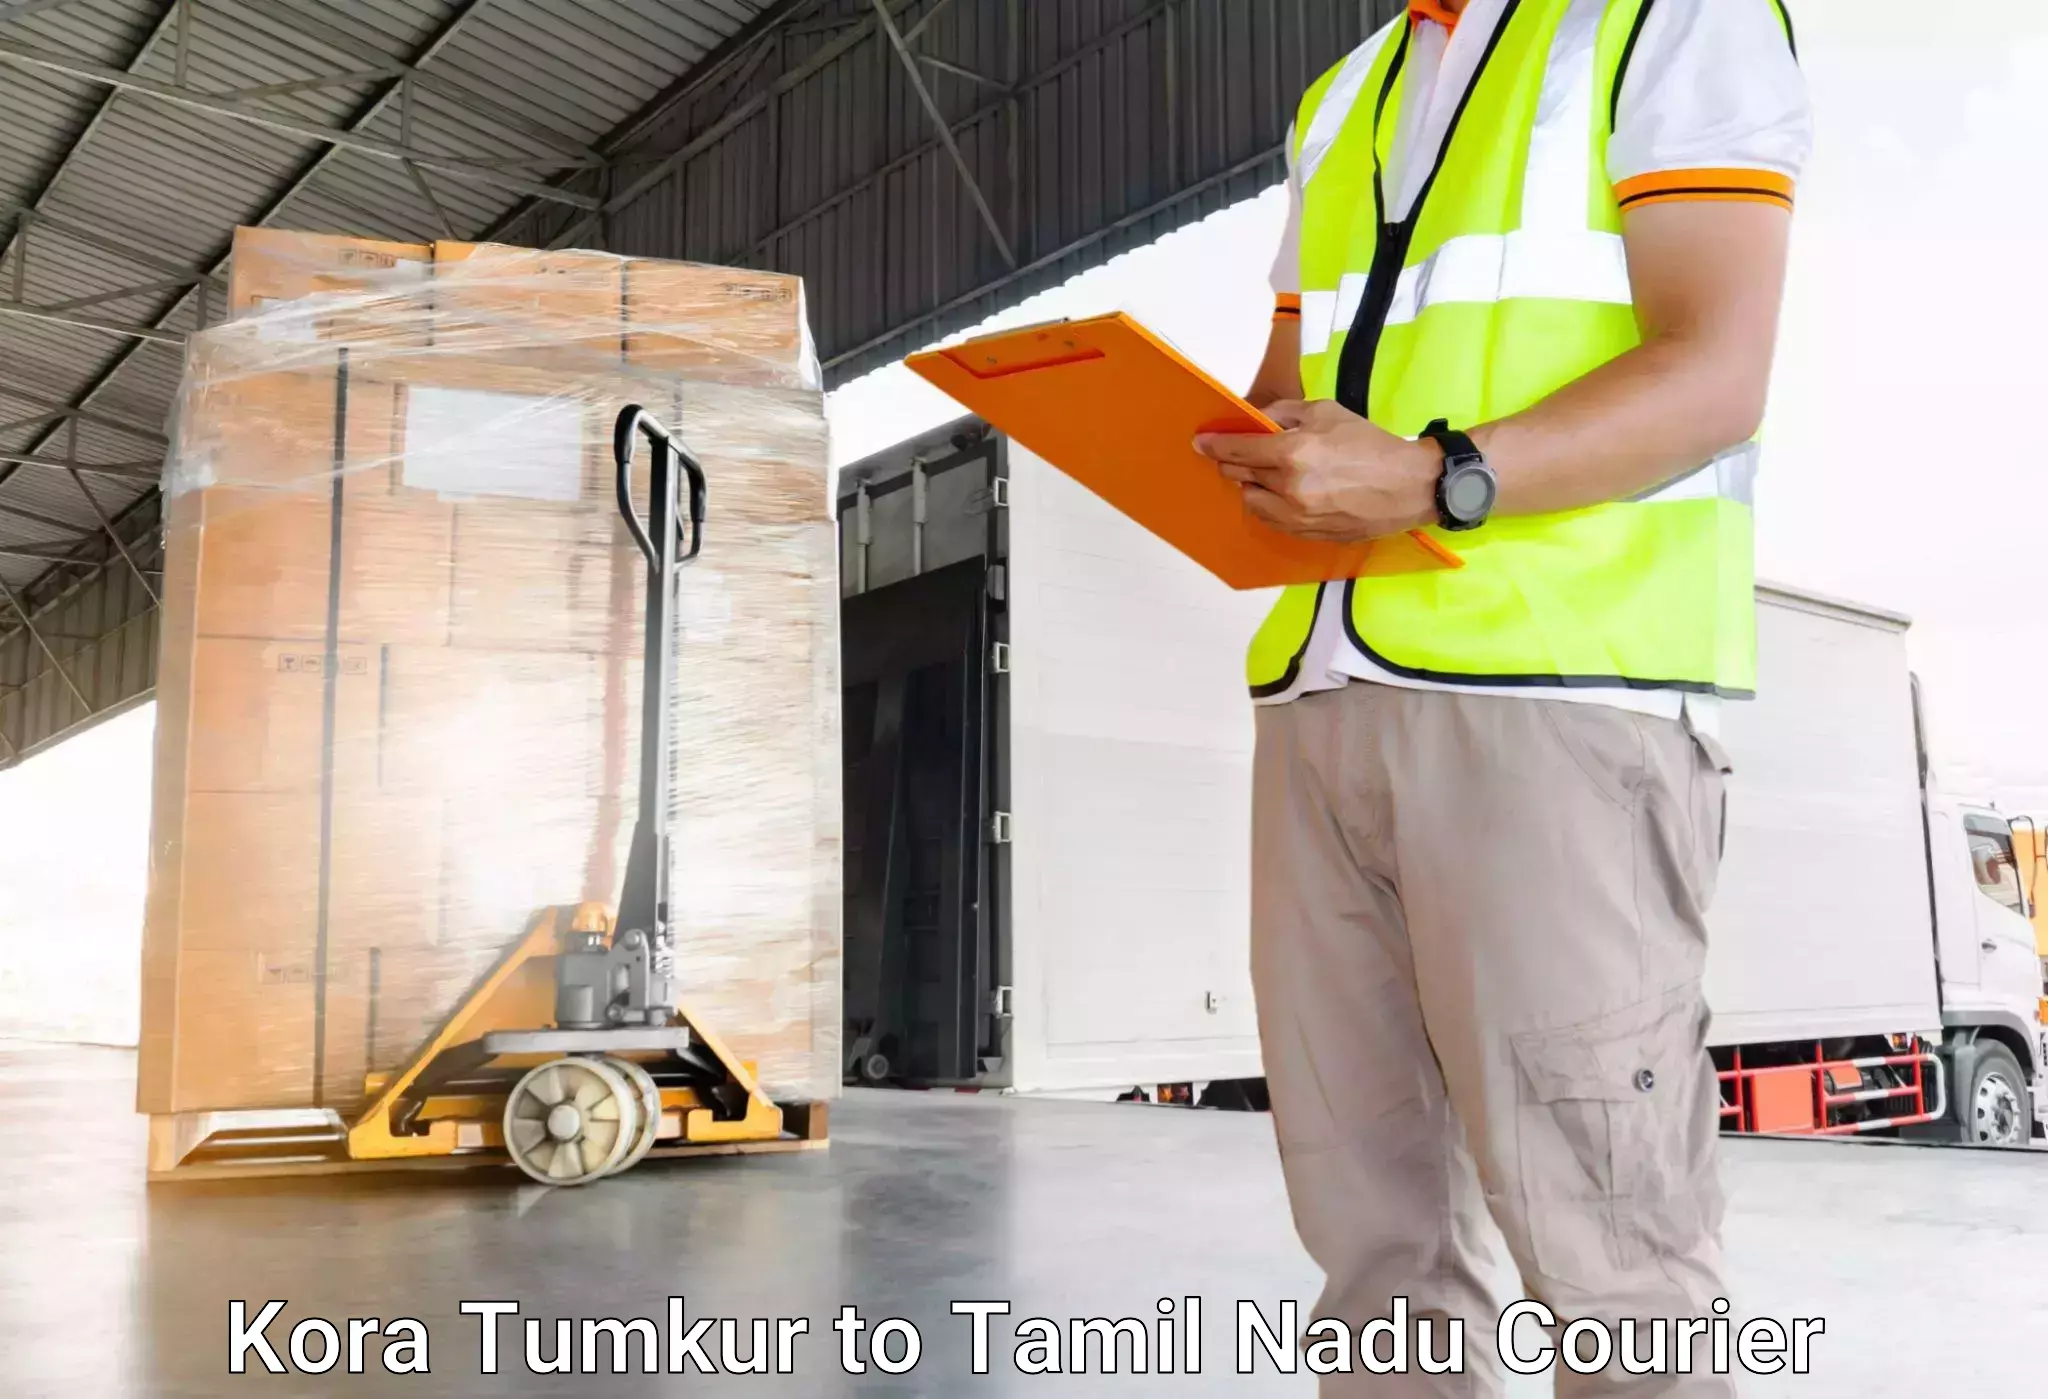 Luggage delivery news Kora Tumkur to Chennai Port